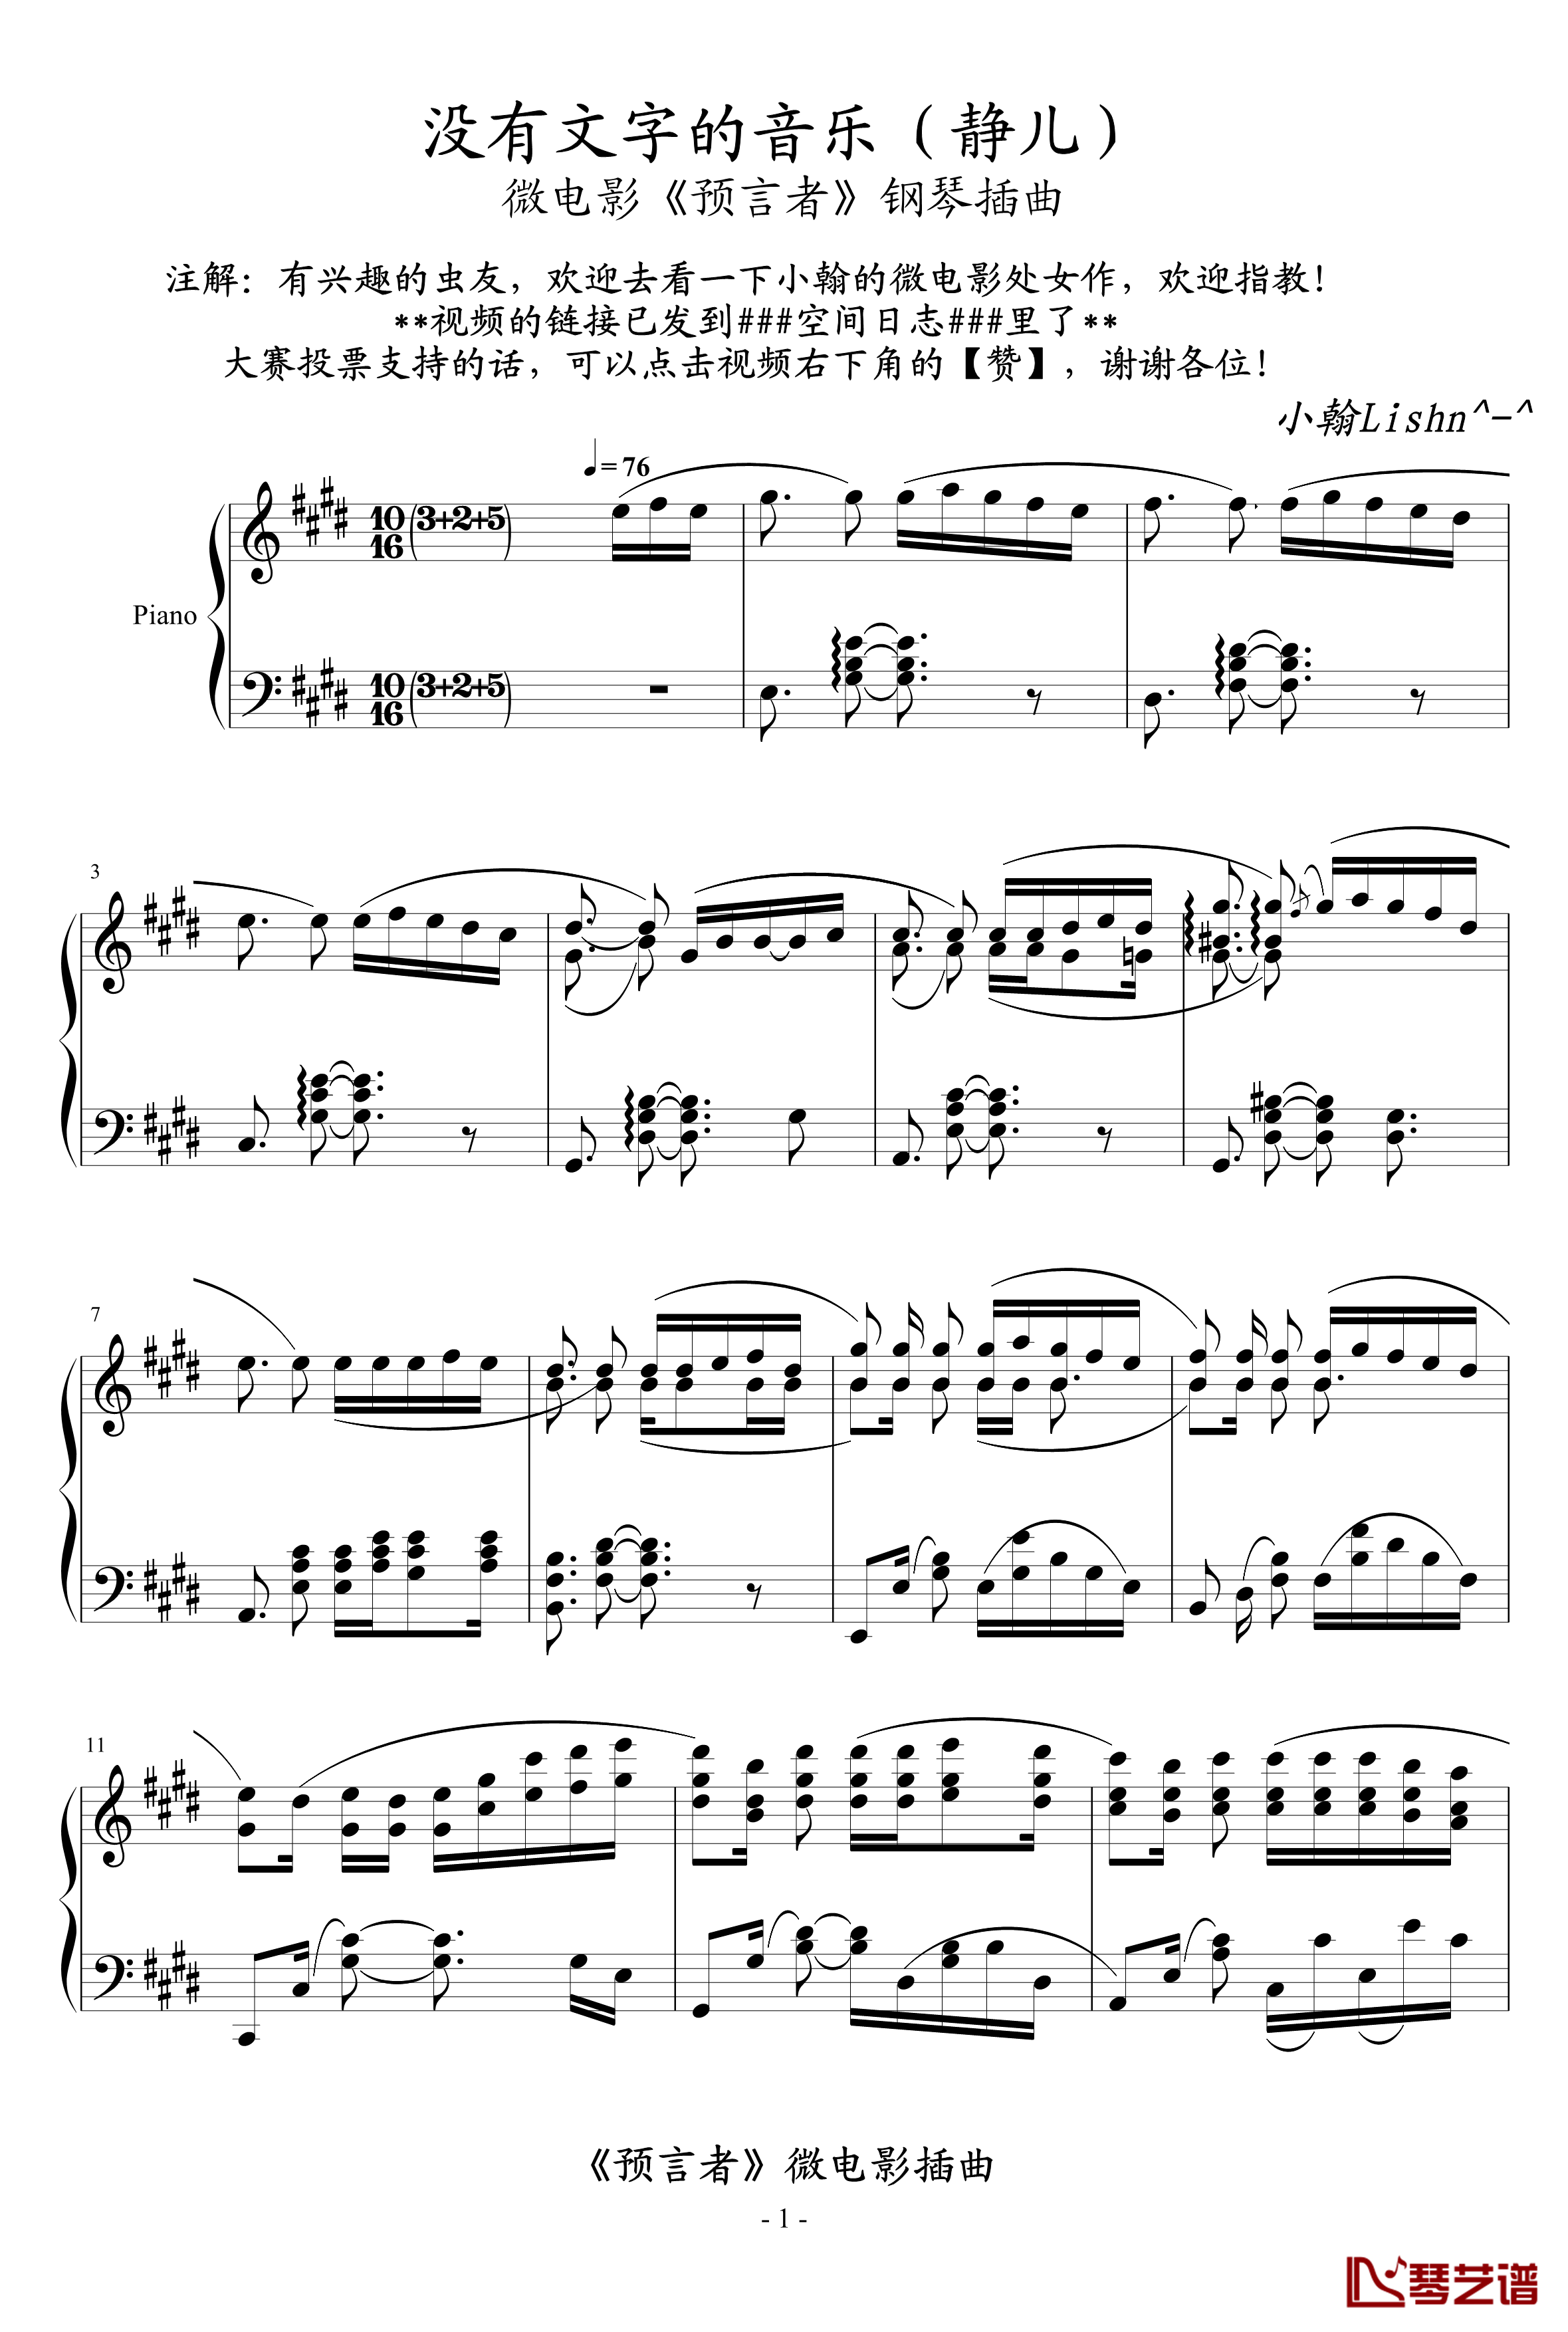 没有文字的音乐钢琴谱-静儿-绿诗翰1